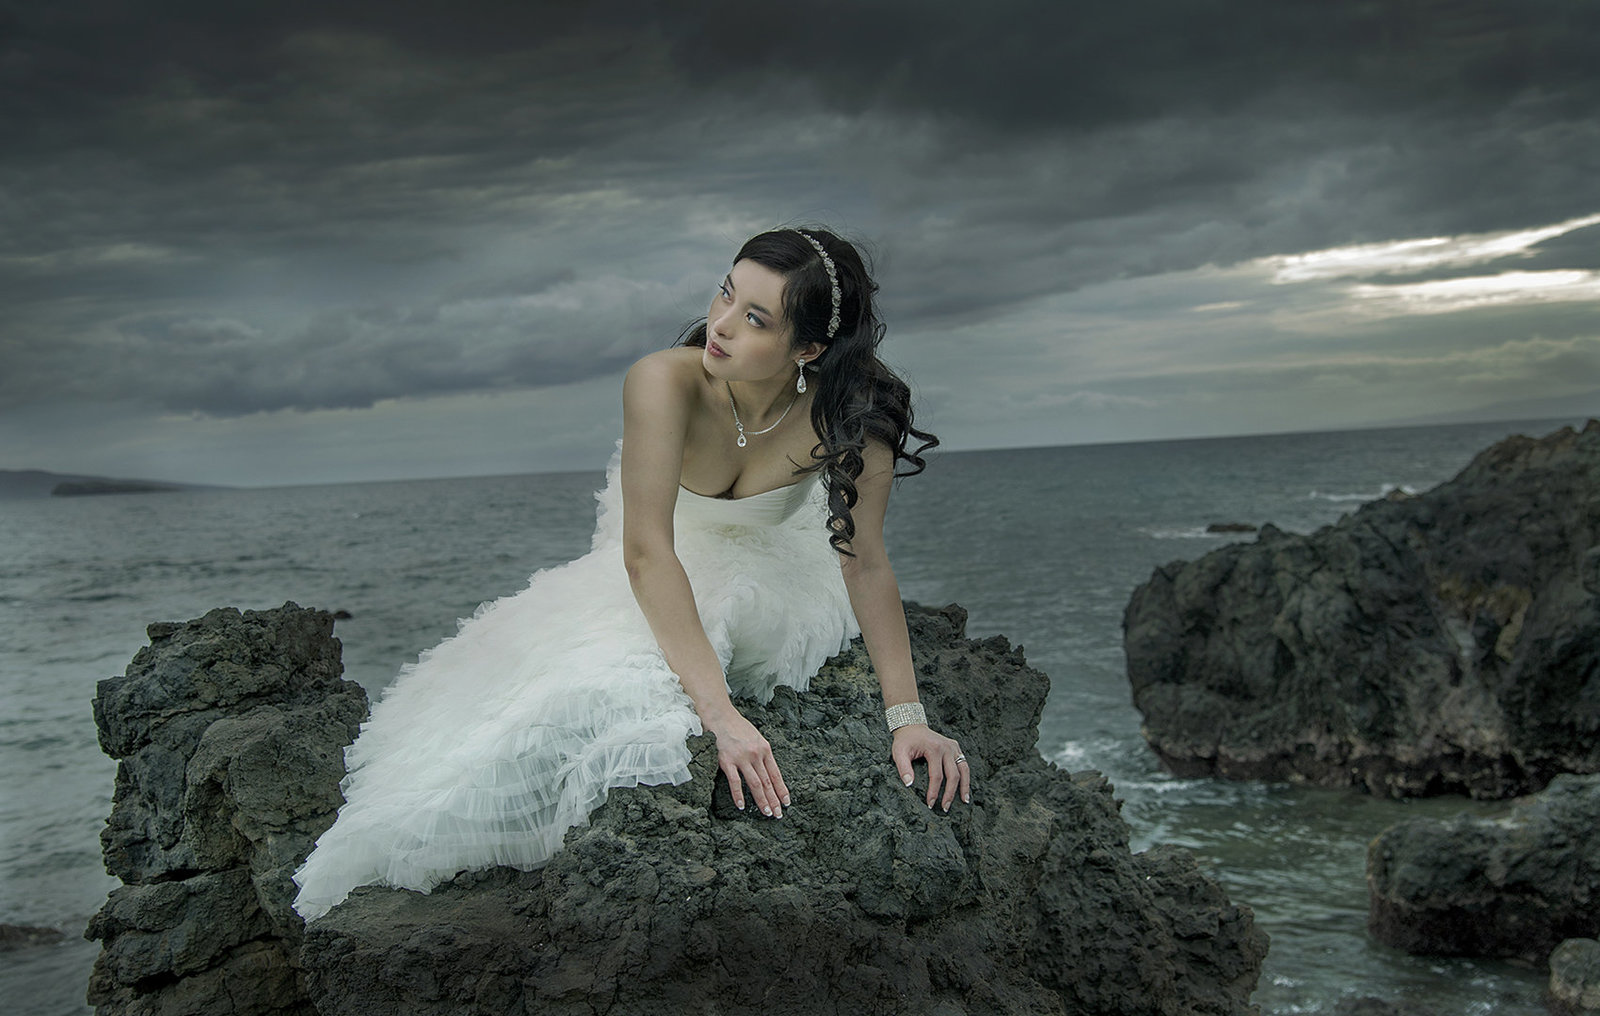 Best Prices for photographers | Cheapest photographers on Maui  | Kauai | Oahu | Big Island